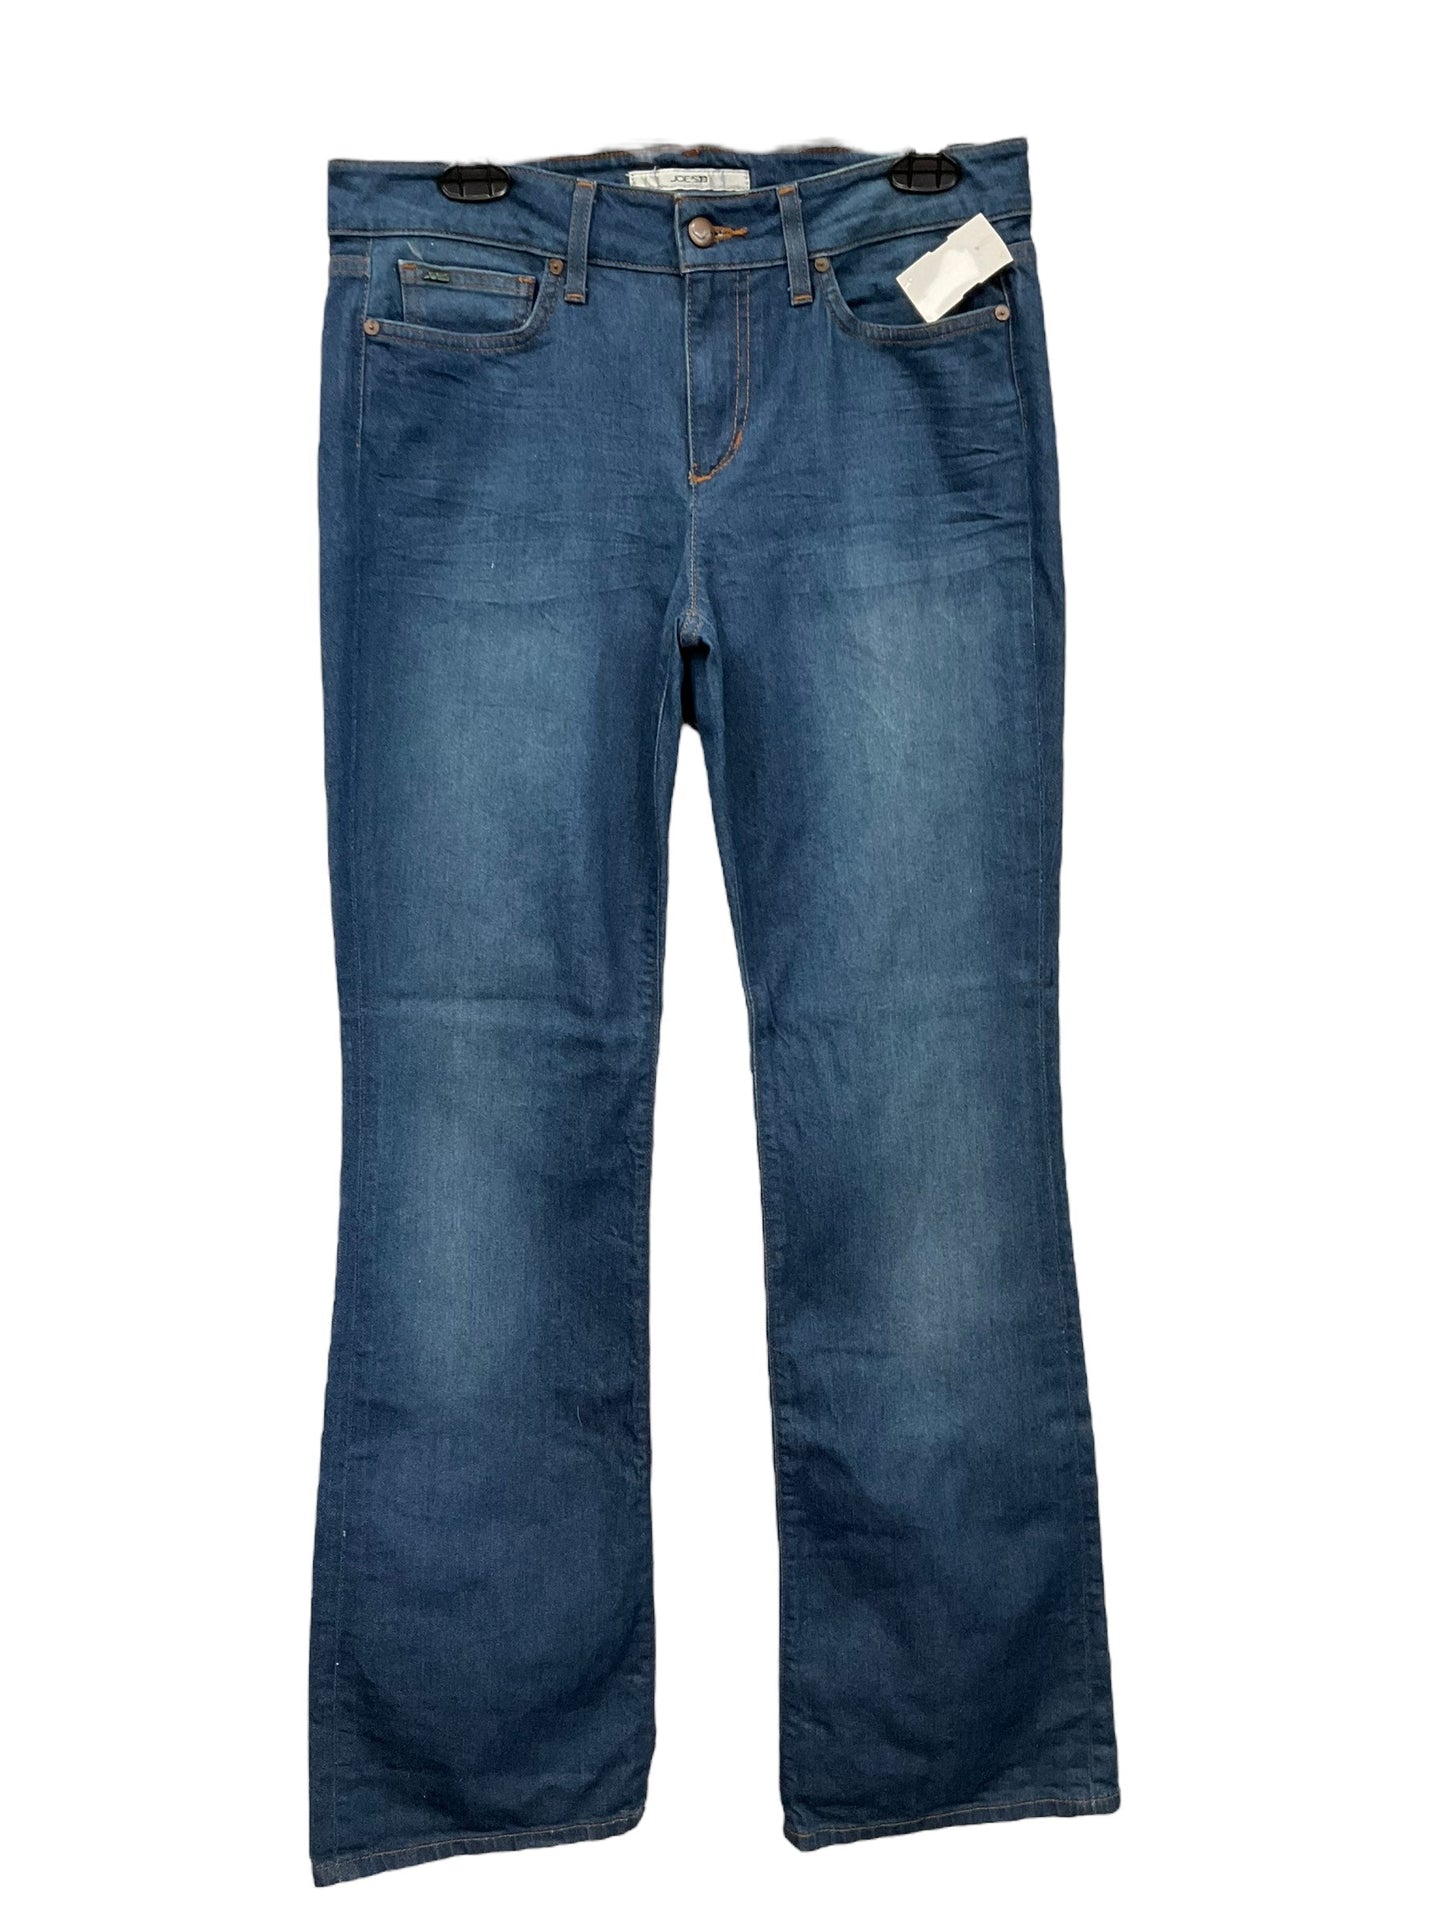 Blue Denim Jeans Boot Cut Joes Jeans, Size 10